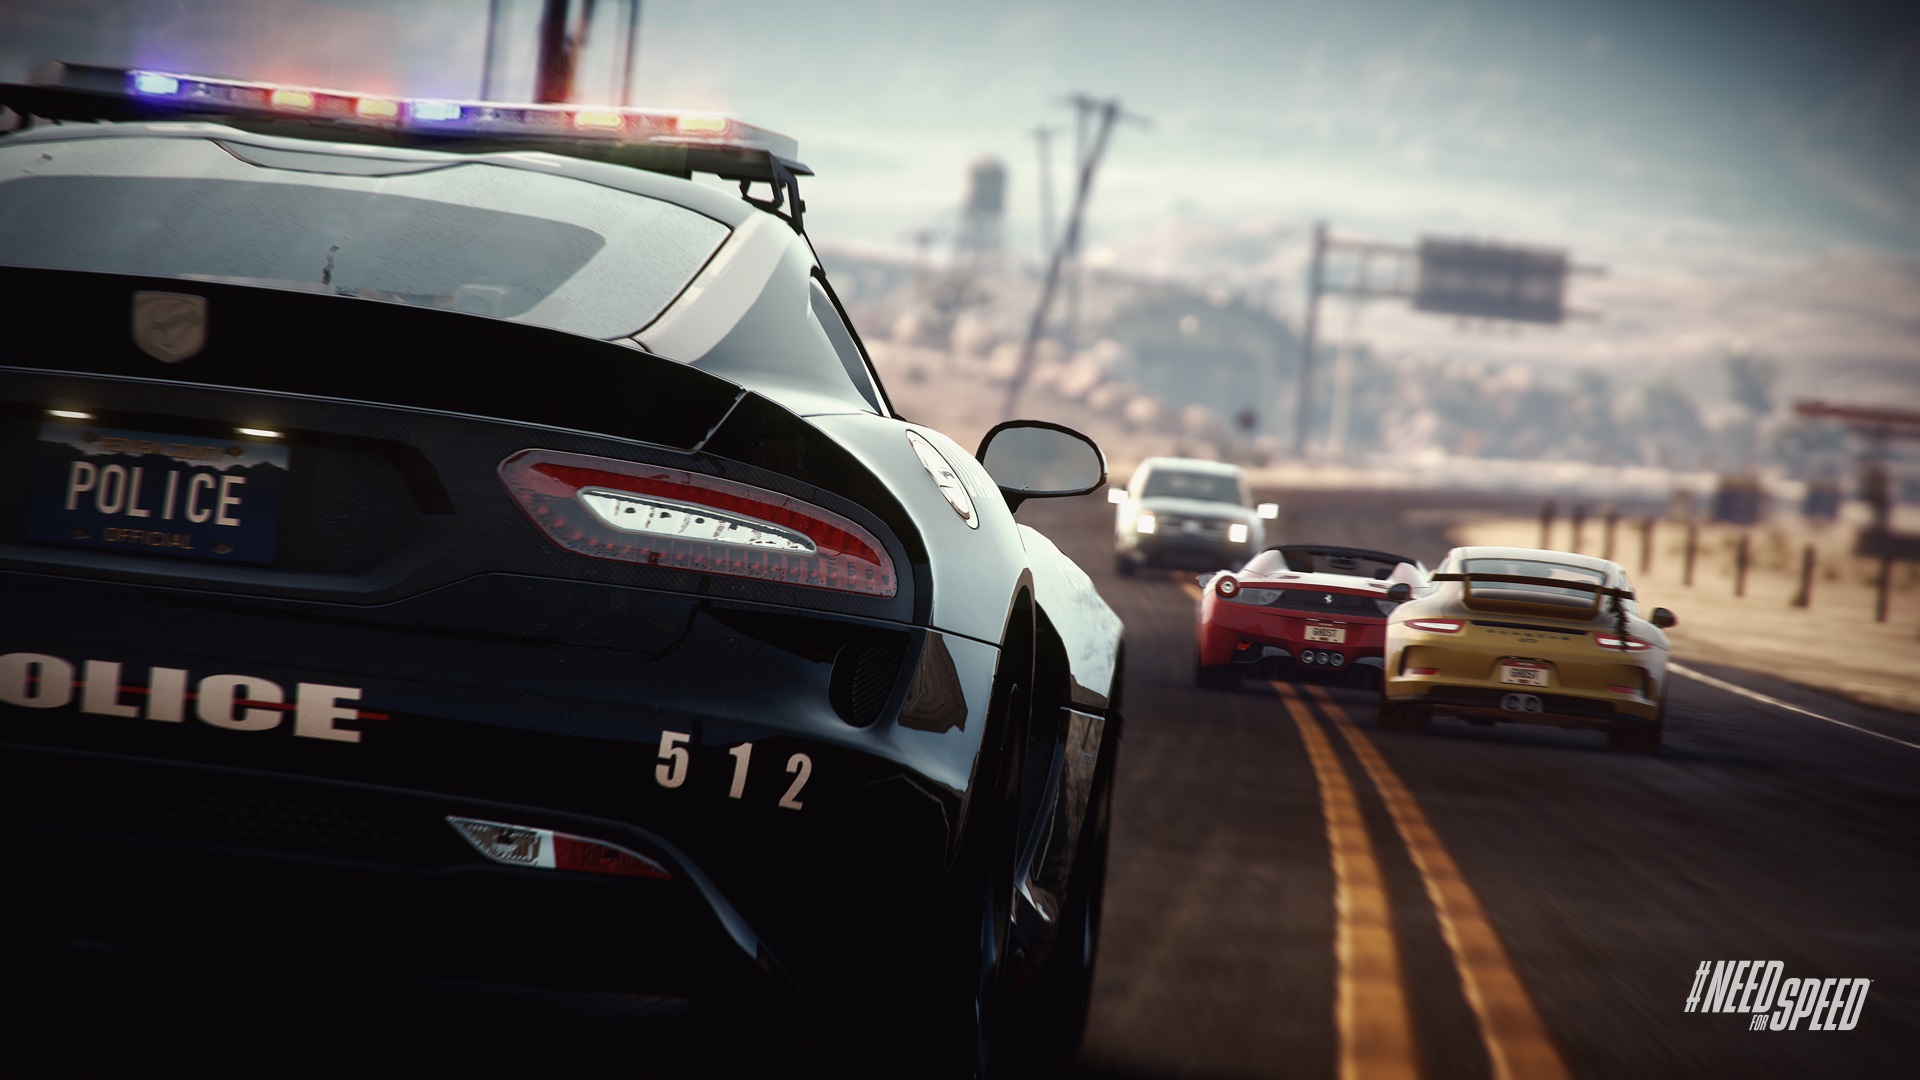 Need For Speed: Rivals Civiln vozidl u nie s plvajce krabice, poctivo vm zavadzaj, take to neraz naplite priamo do nich.